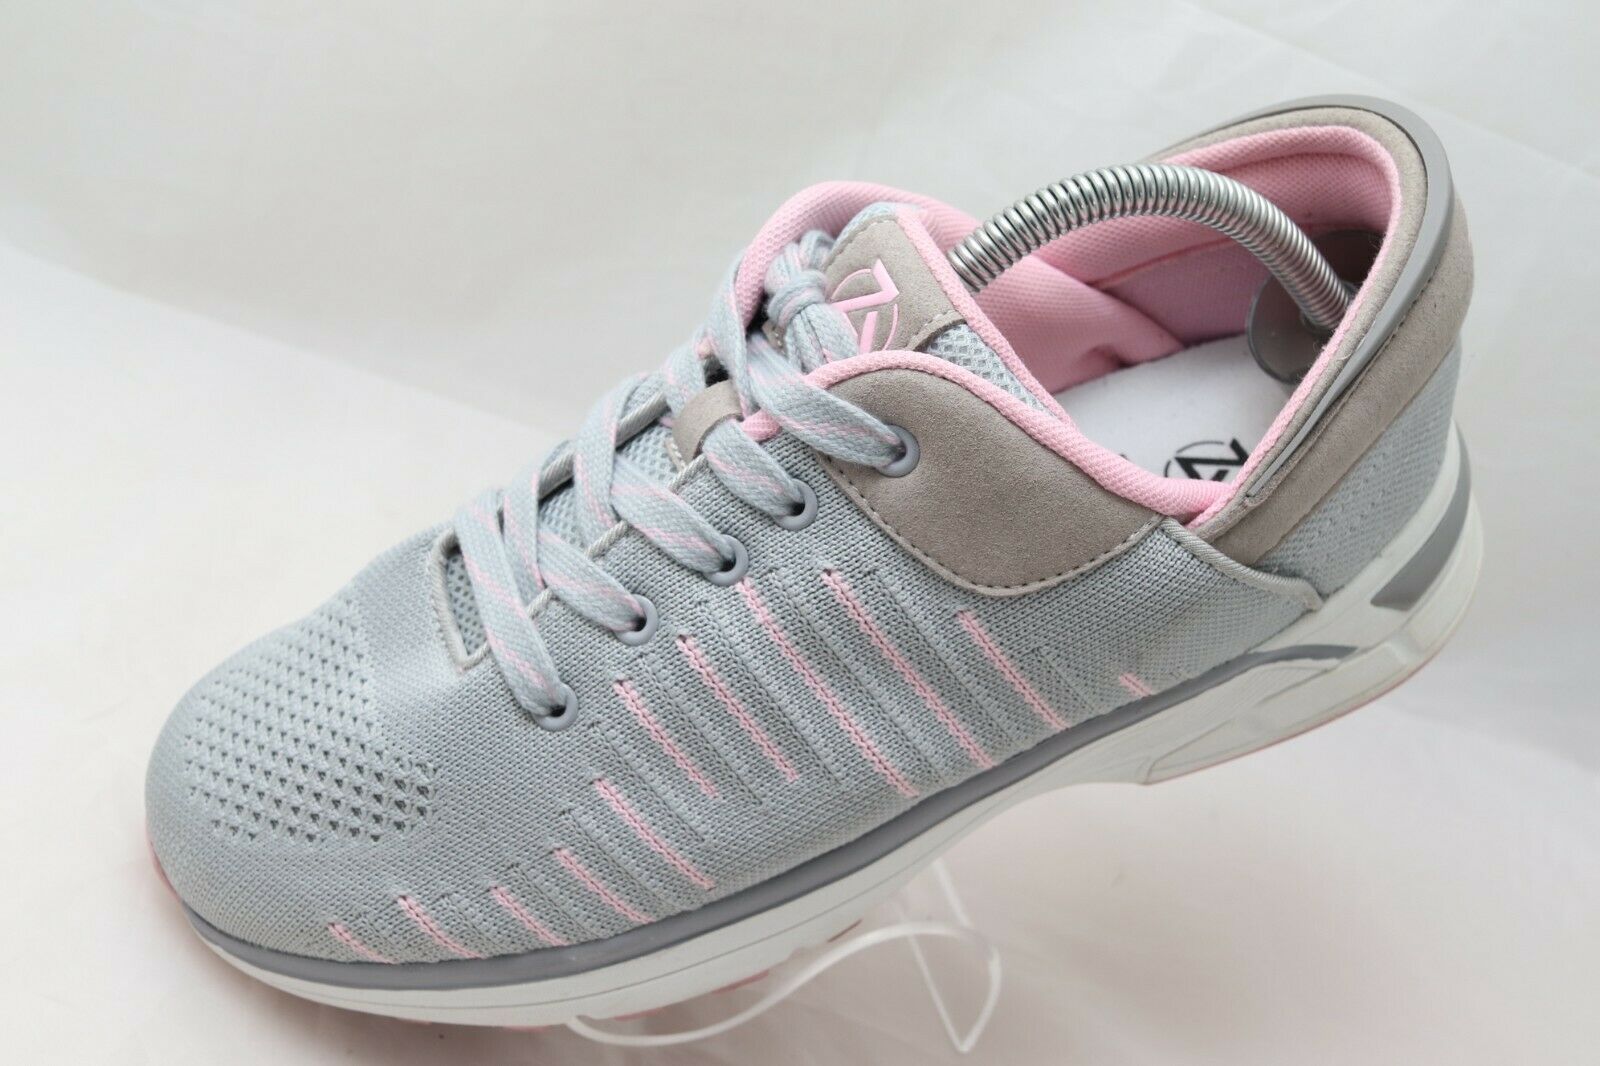 Zeba Women’s Size 10.5 W Wide Hands-free Slip-on Sneakers Rose Gray